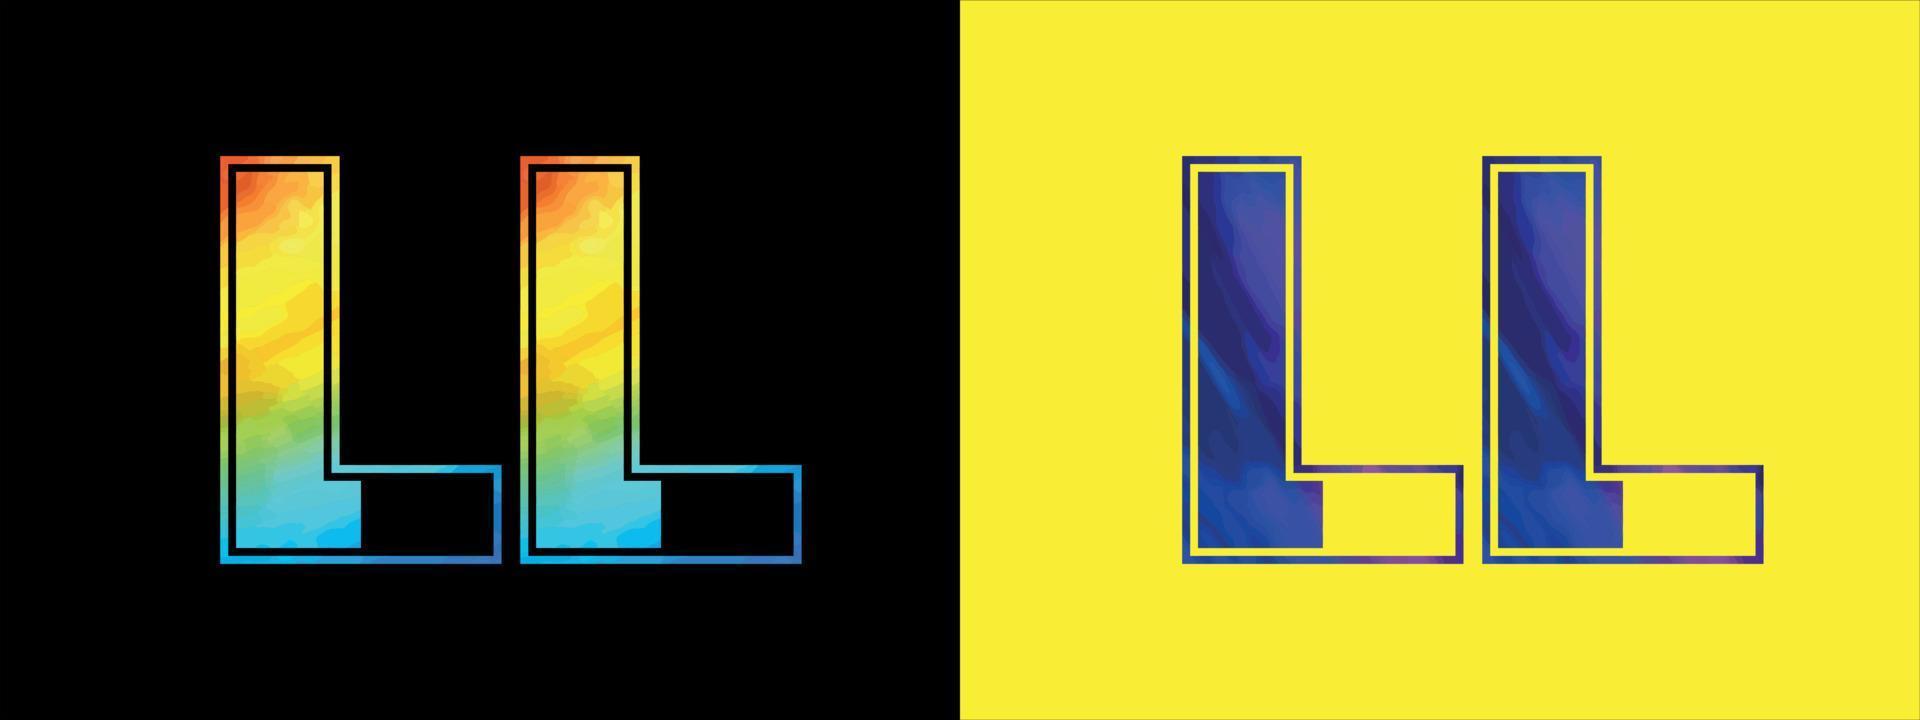 brief ll logo ontwerp vector sjabloon. creatief modern luxueus logotype voor zakelijke bedrijf identiteit